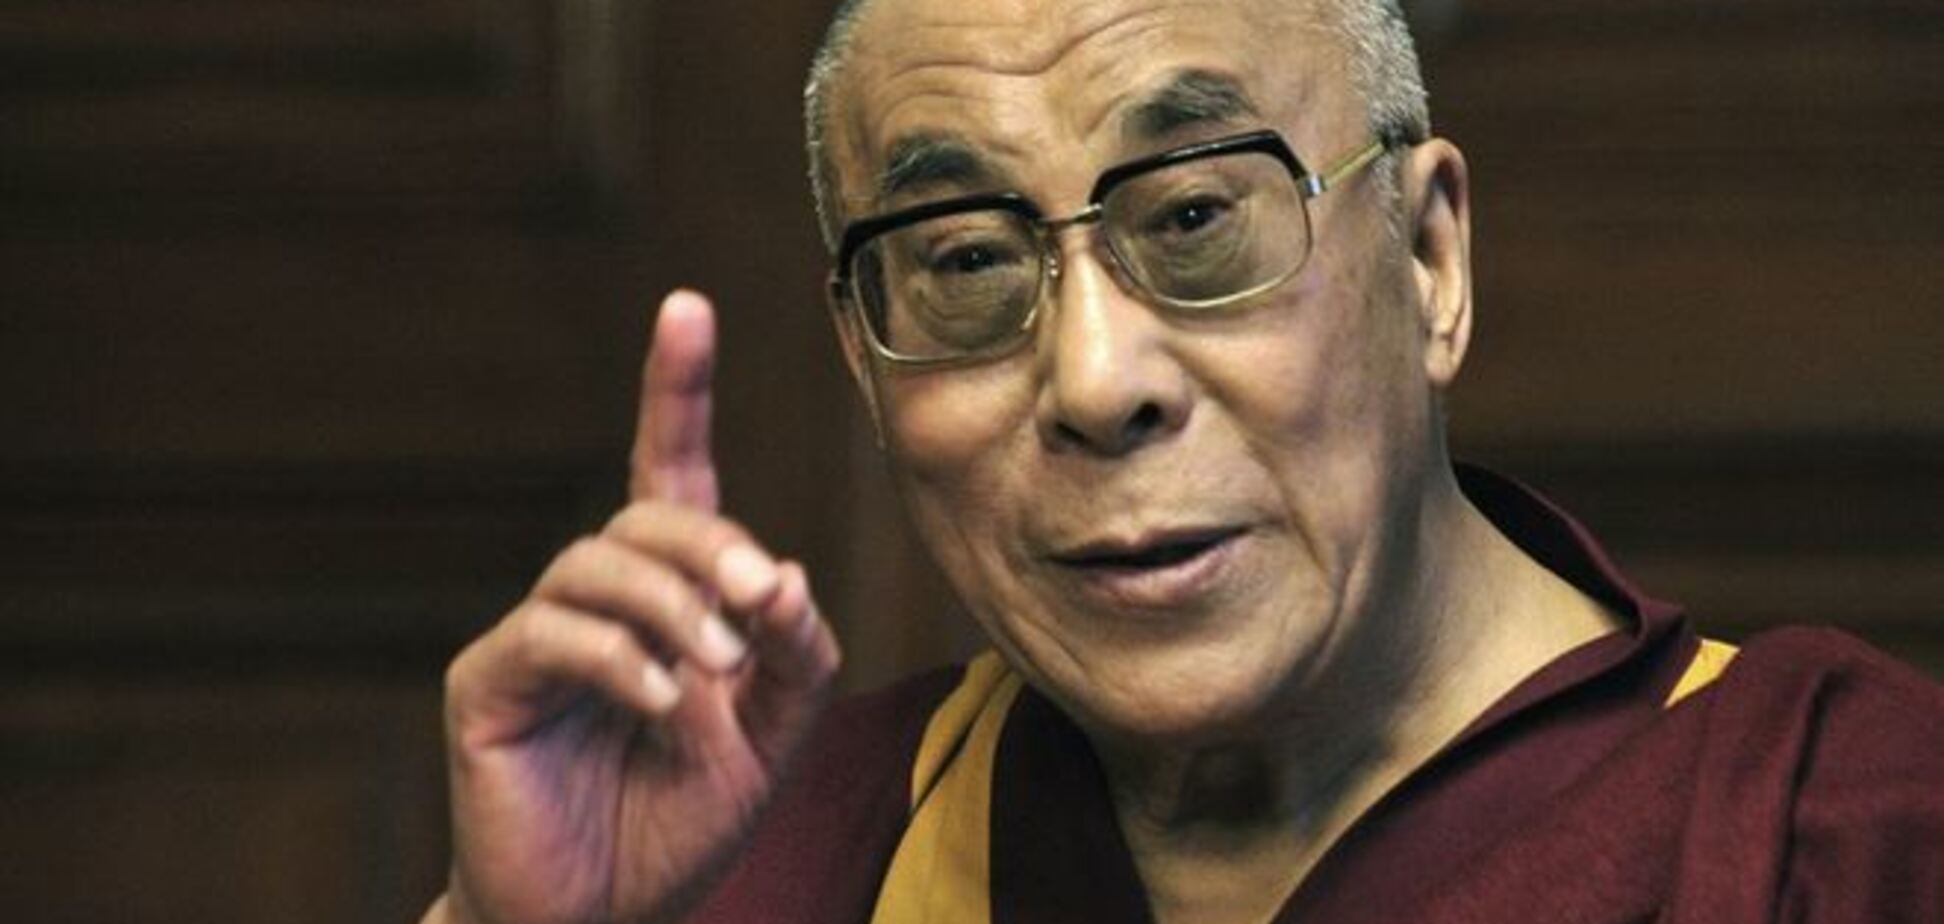 Третью мировую войну может начать сумасшедший с ядерной кнопкой - Далай-лама 